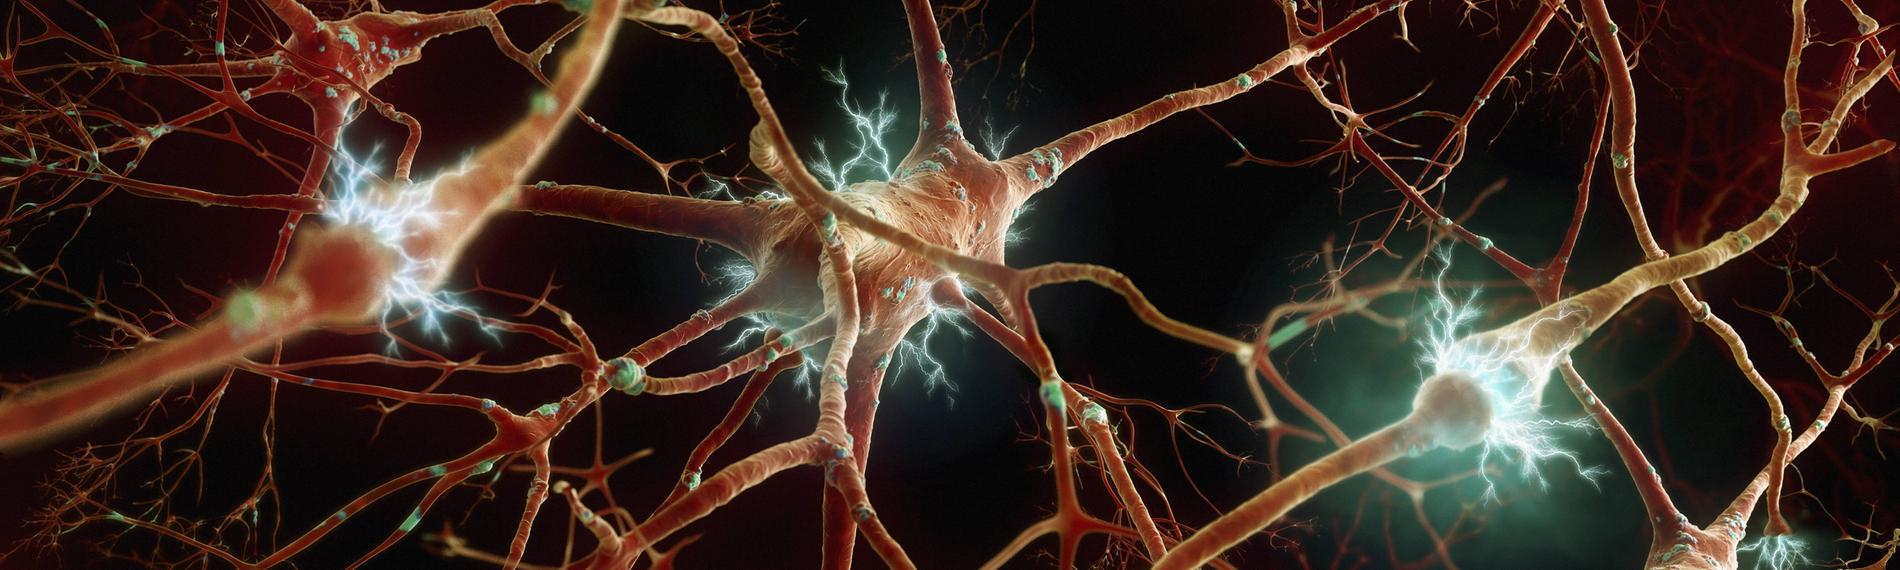 Menschliche Nervenzellen